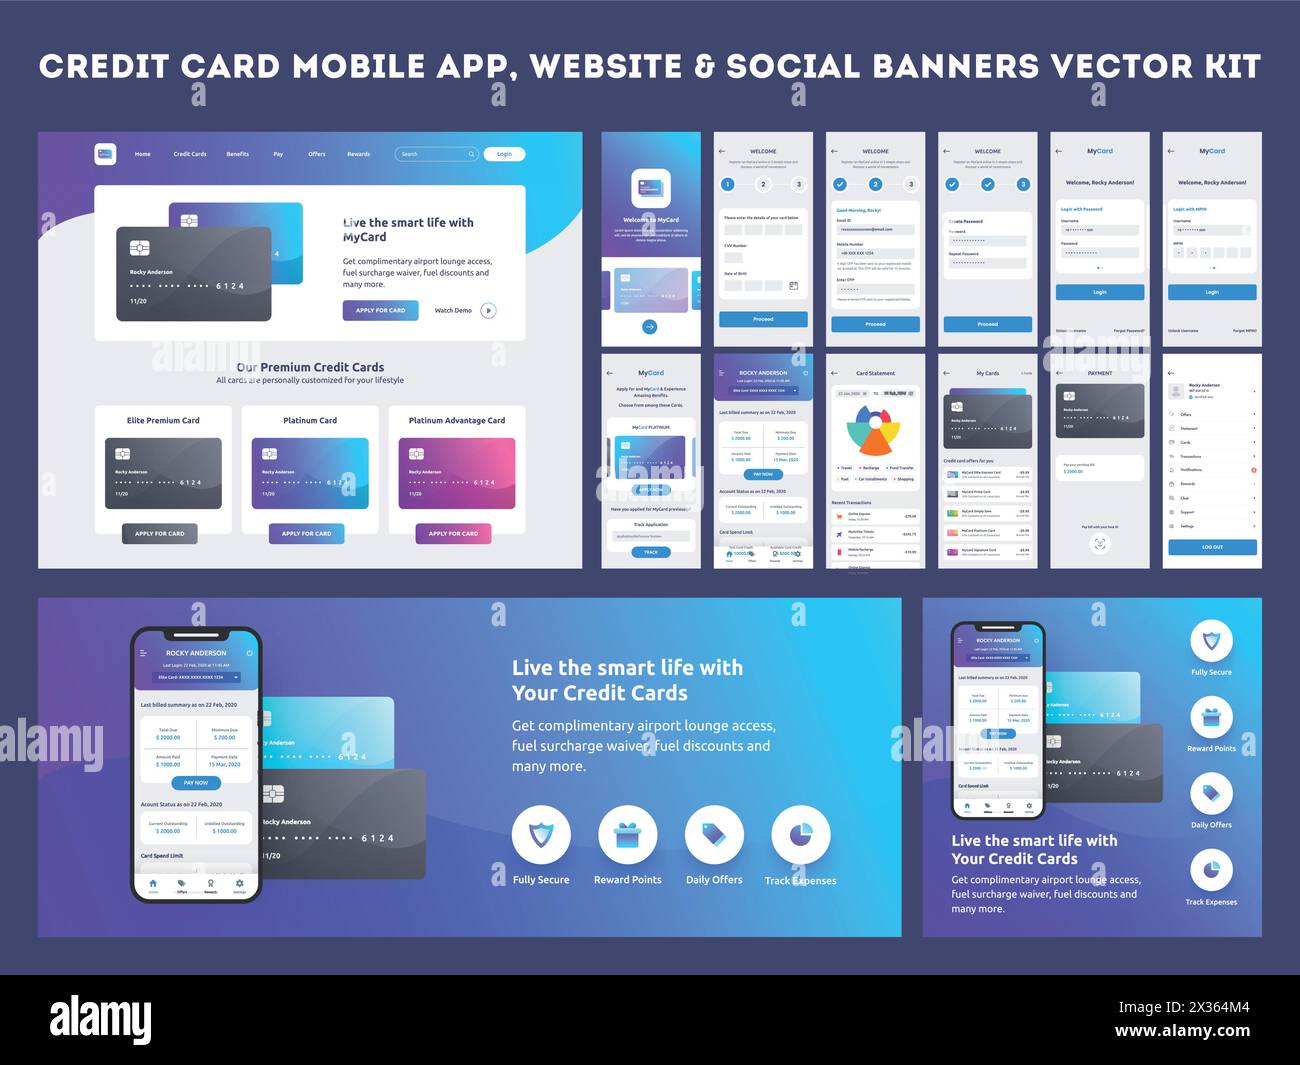 Online-Bezahlungs- oder Kreditkarten-App-ui-Kit mit Websitemenü wie AS, Kreditkarten, Sparkonten, Girokonten und Transaktionsbestätigung. Stock Vektor